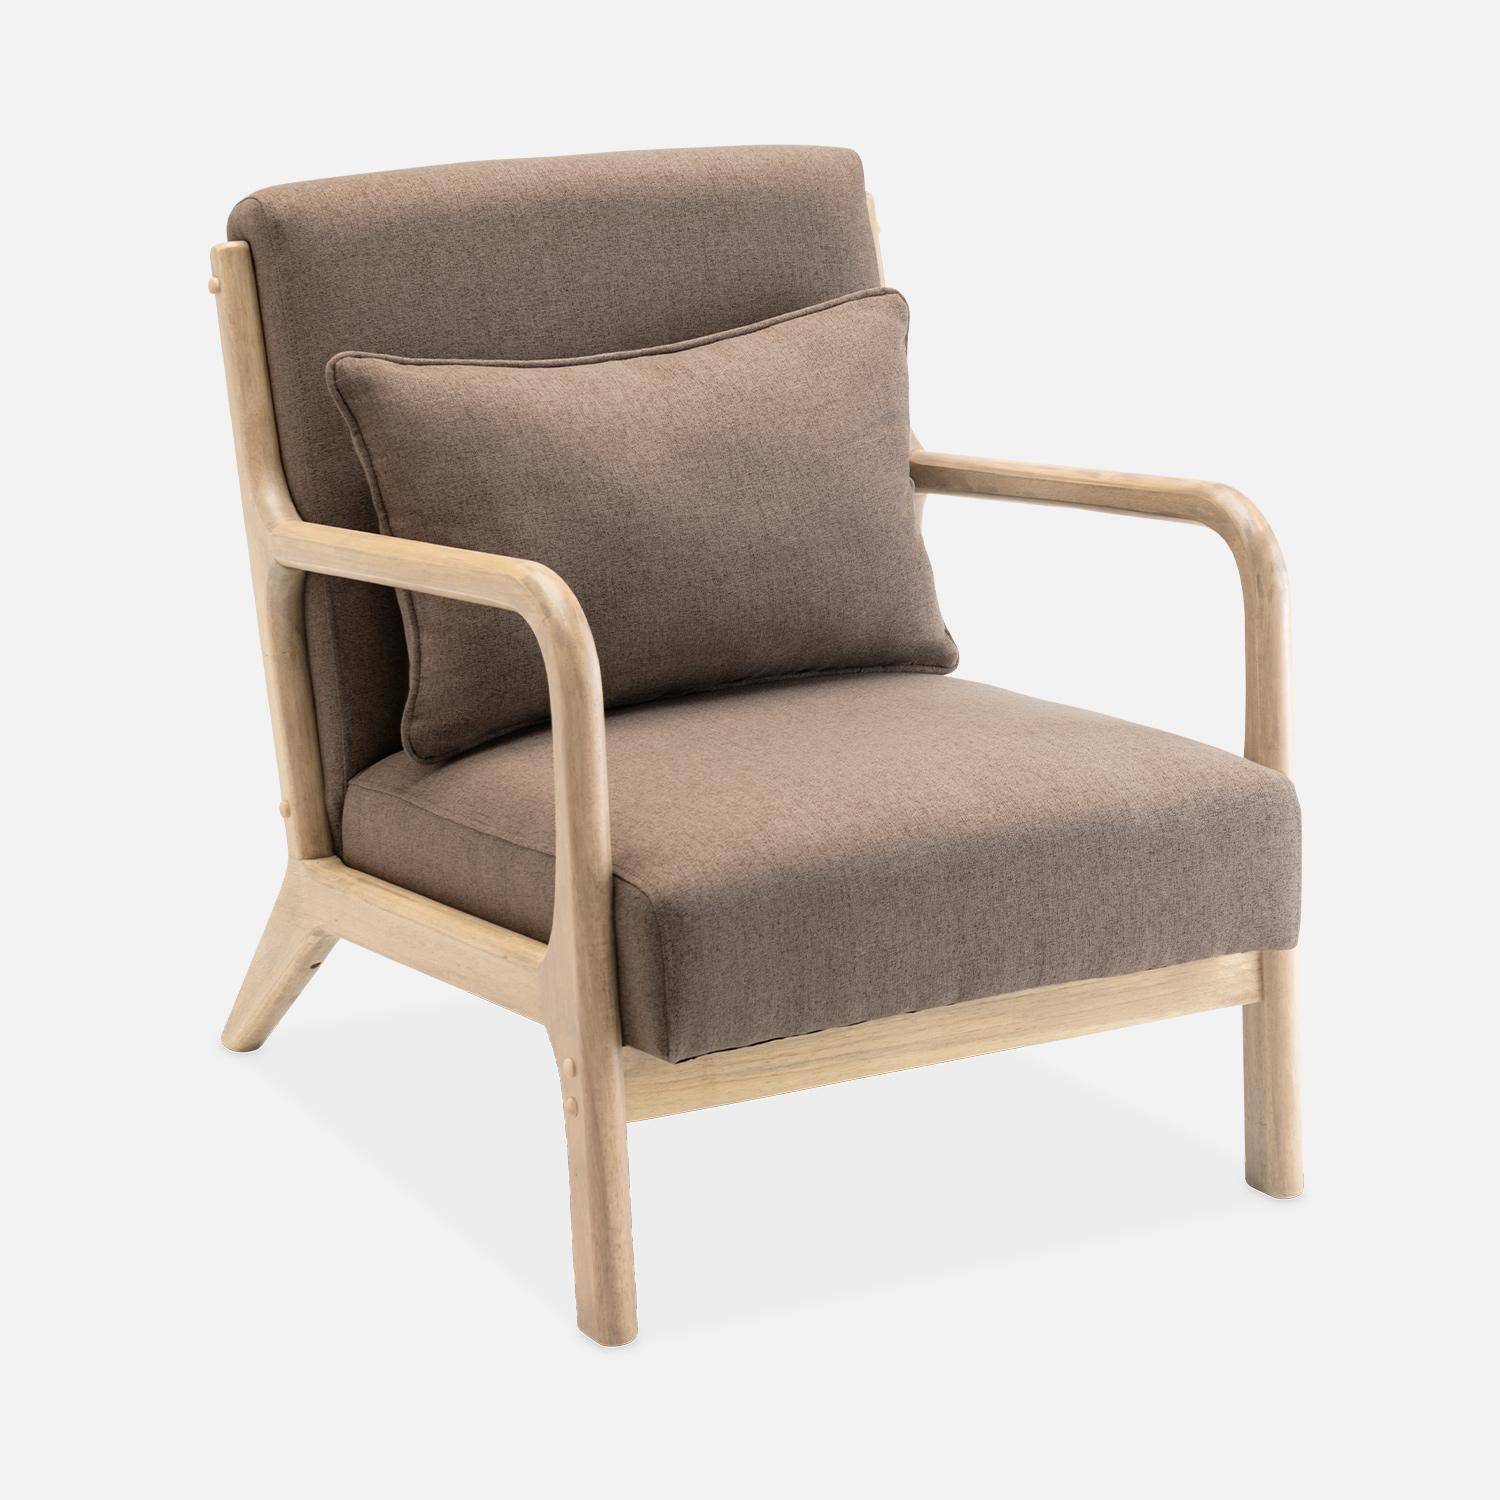 Fauteuil design marron en bois et tissu, 1 place droit fixe, pieds compas scandinave, structure en bois solide, assise confortable  Photo4